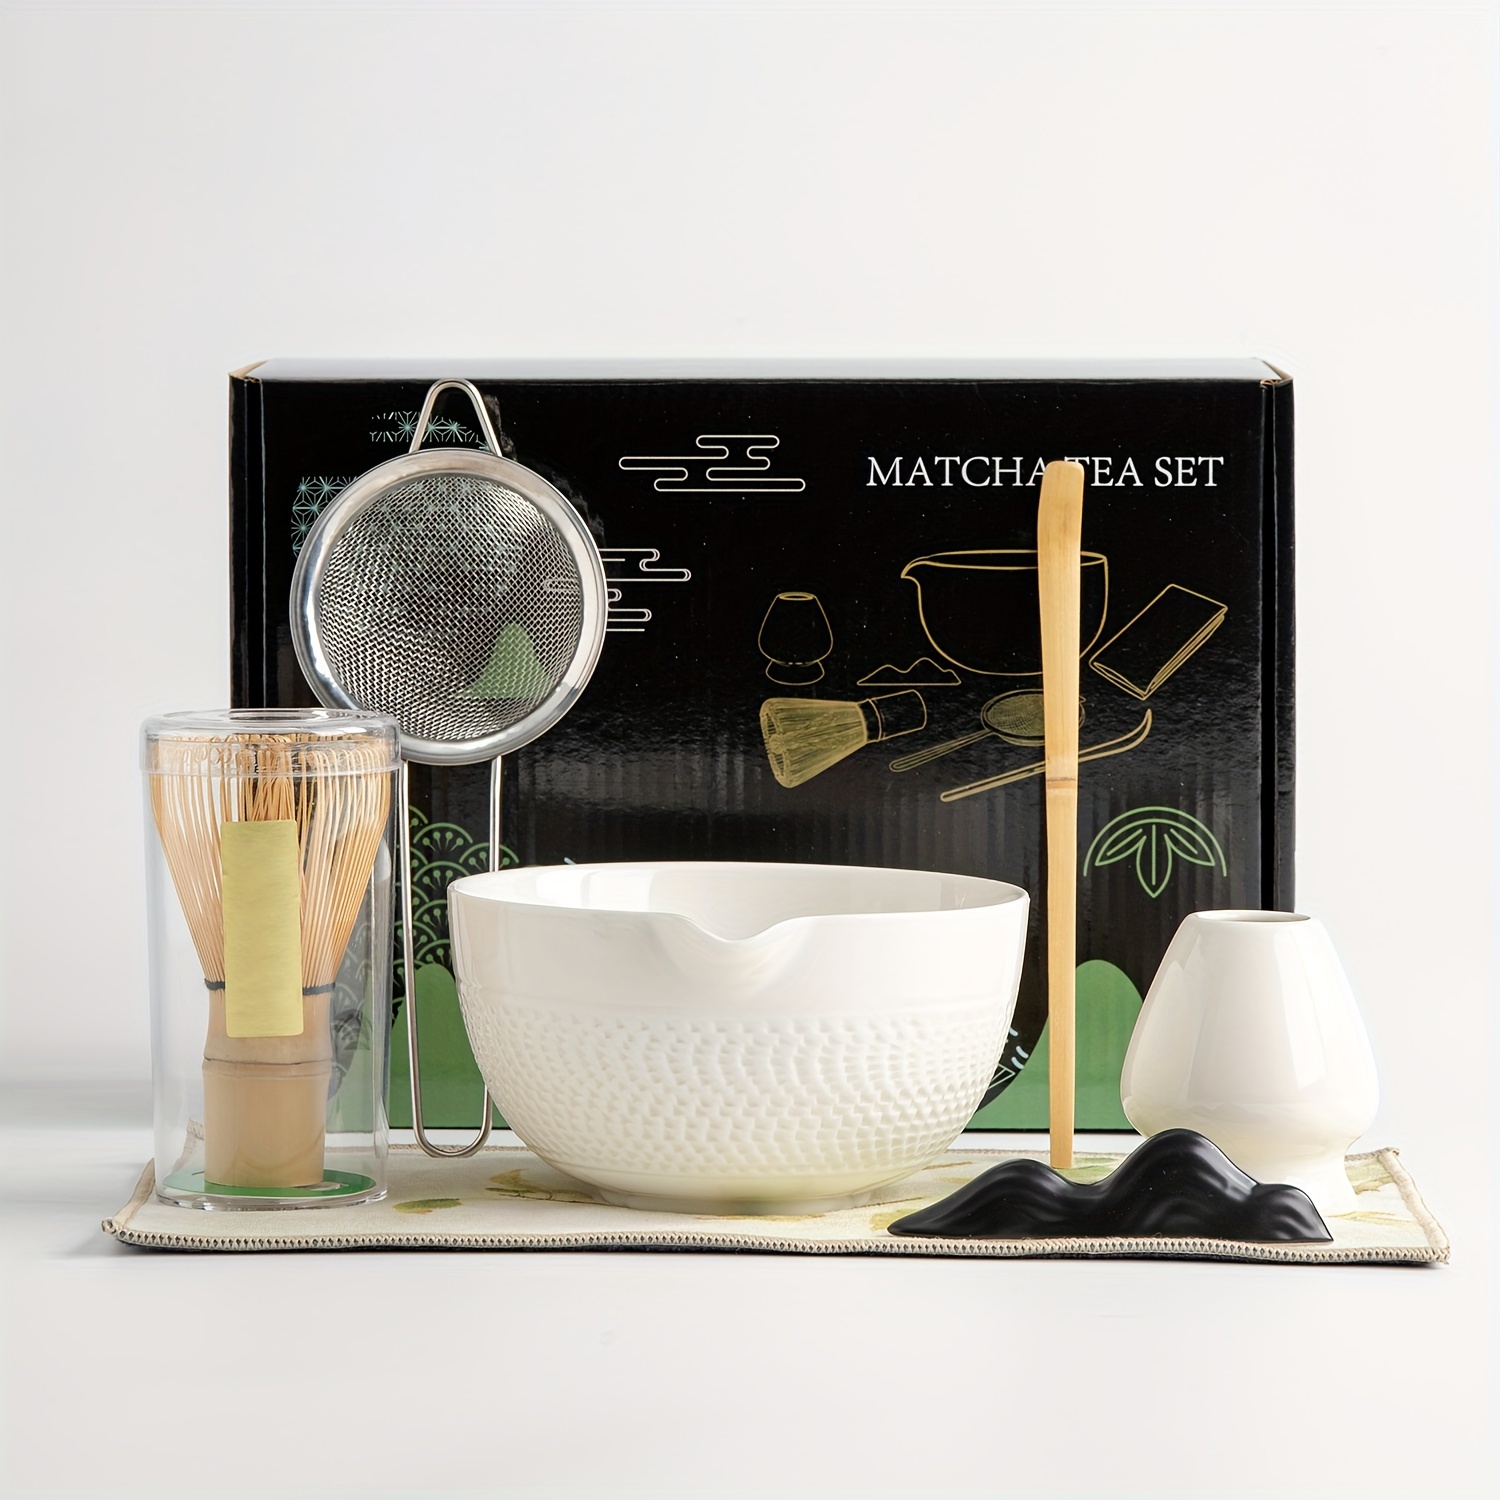 Accesorios para el té Matcha - Soporte de porcelana para el batidor